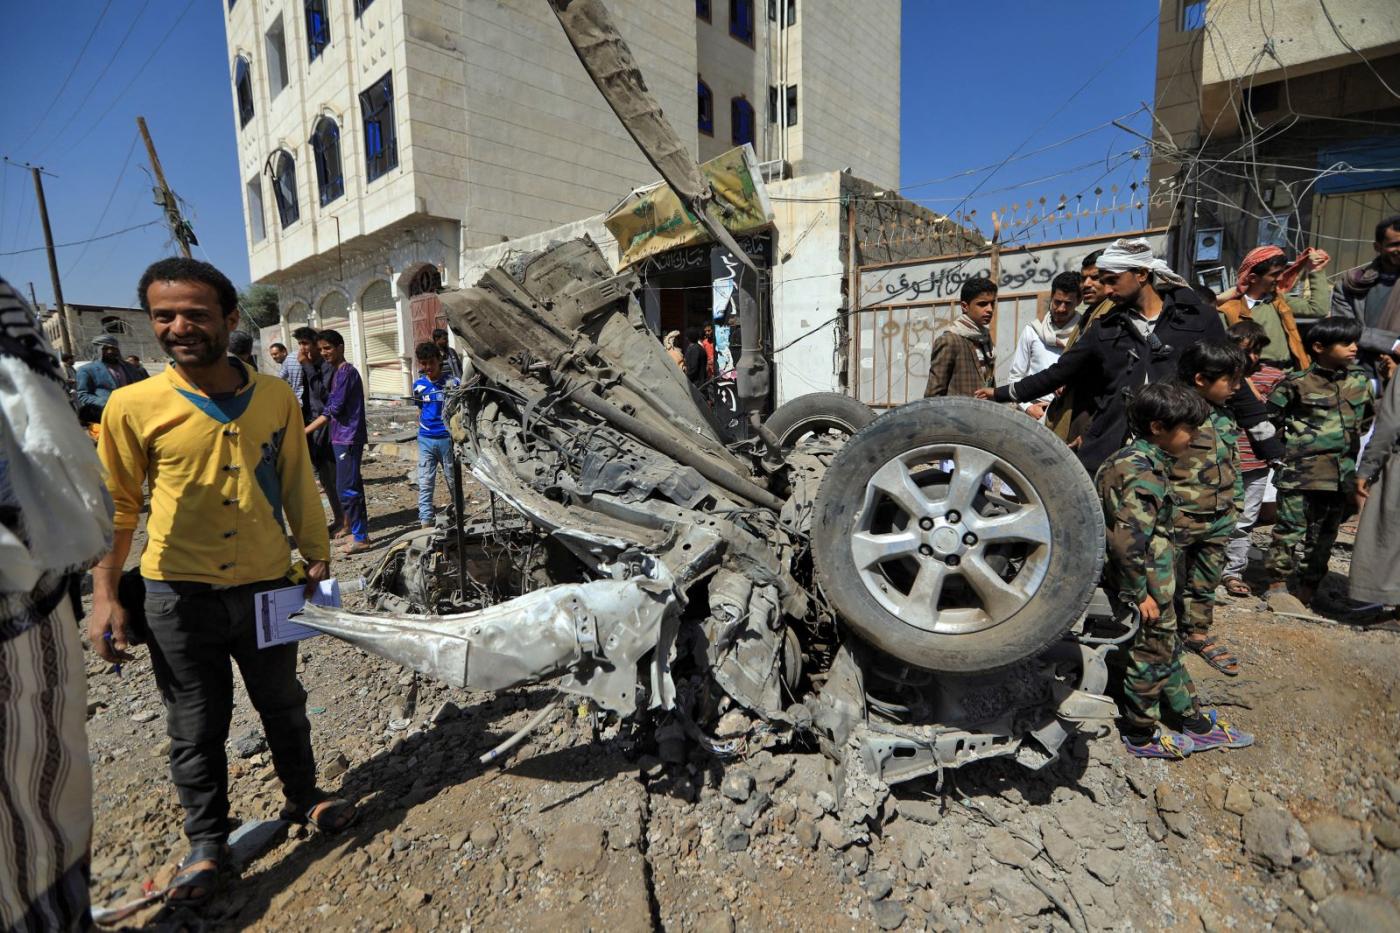 أدت مبيعات الأسلحة البريطانية إلى تأجيج الهجمات الأخيرة على المدنيين في اليمن